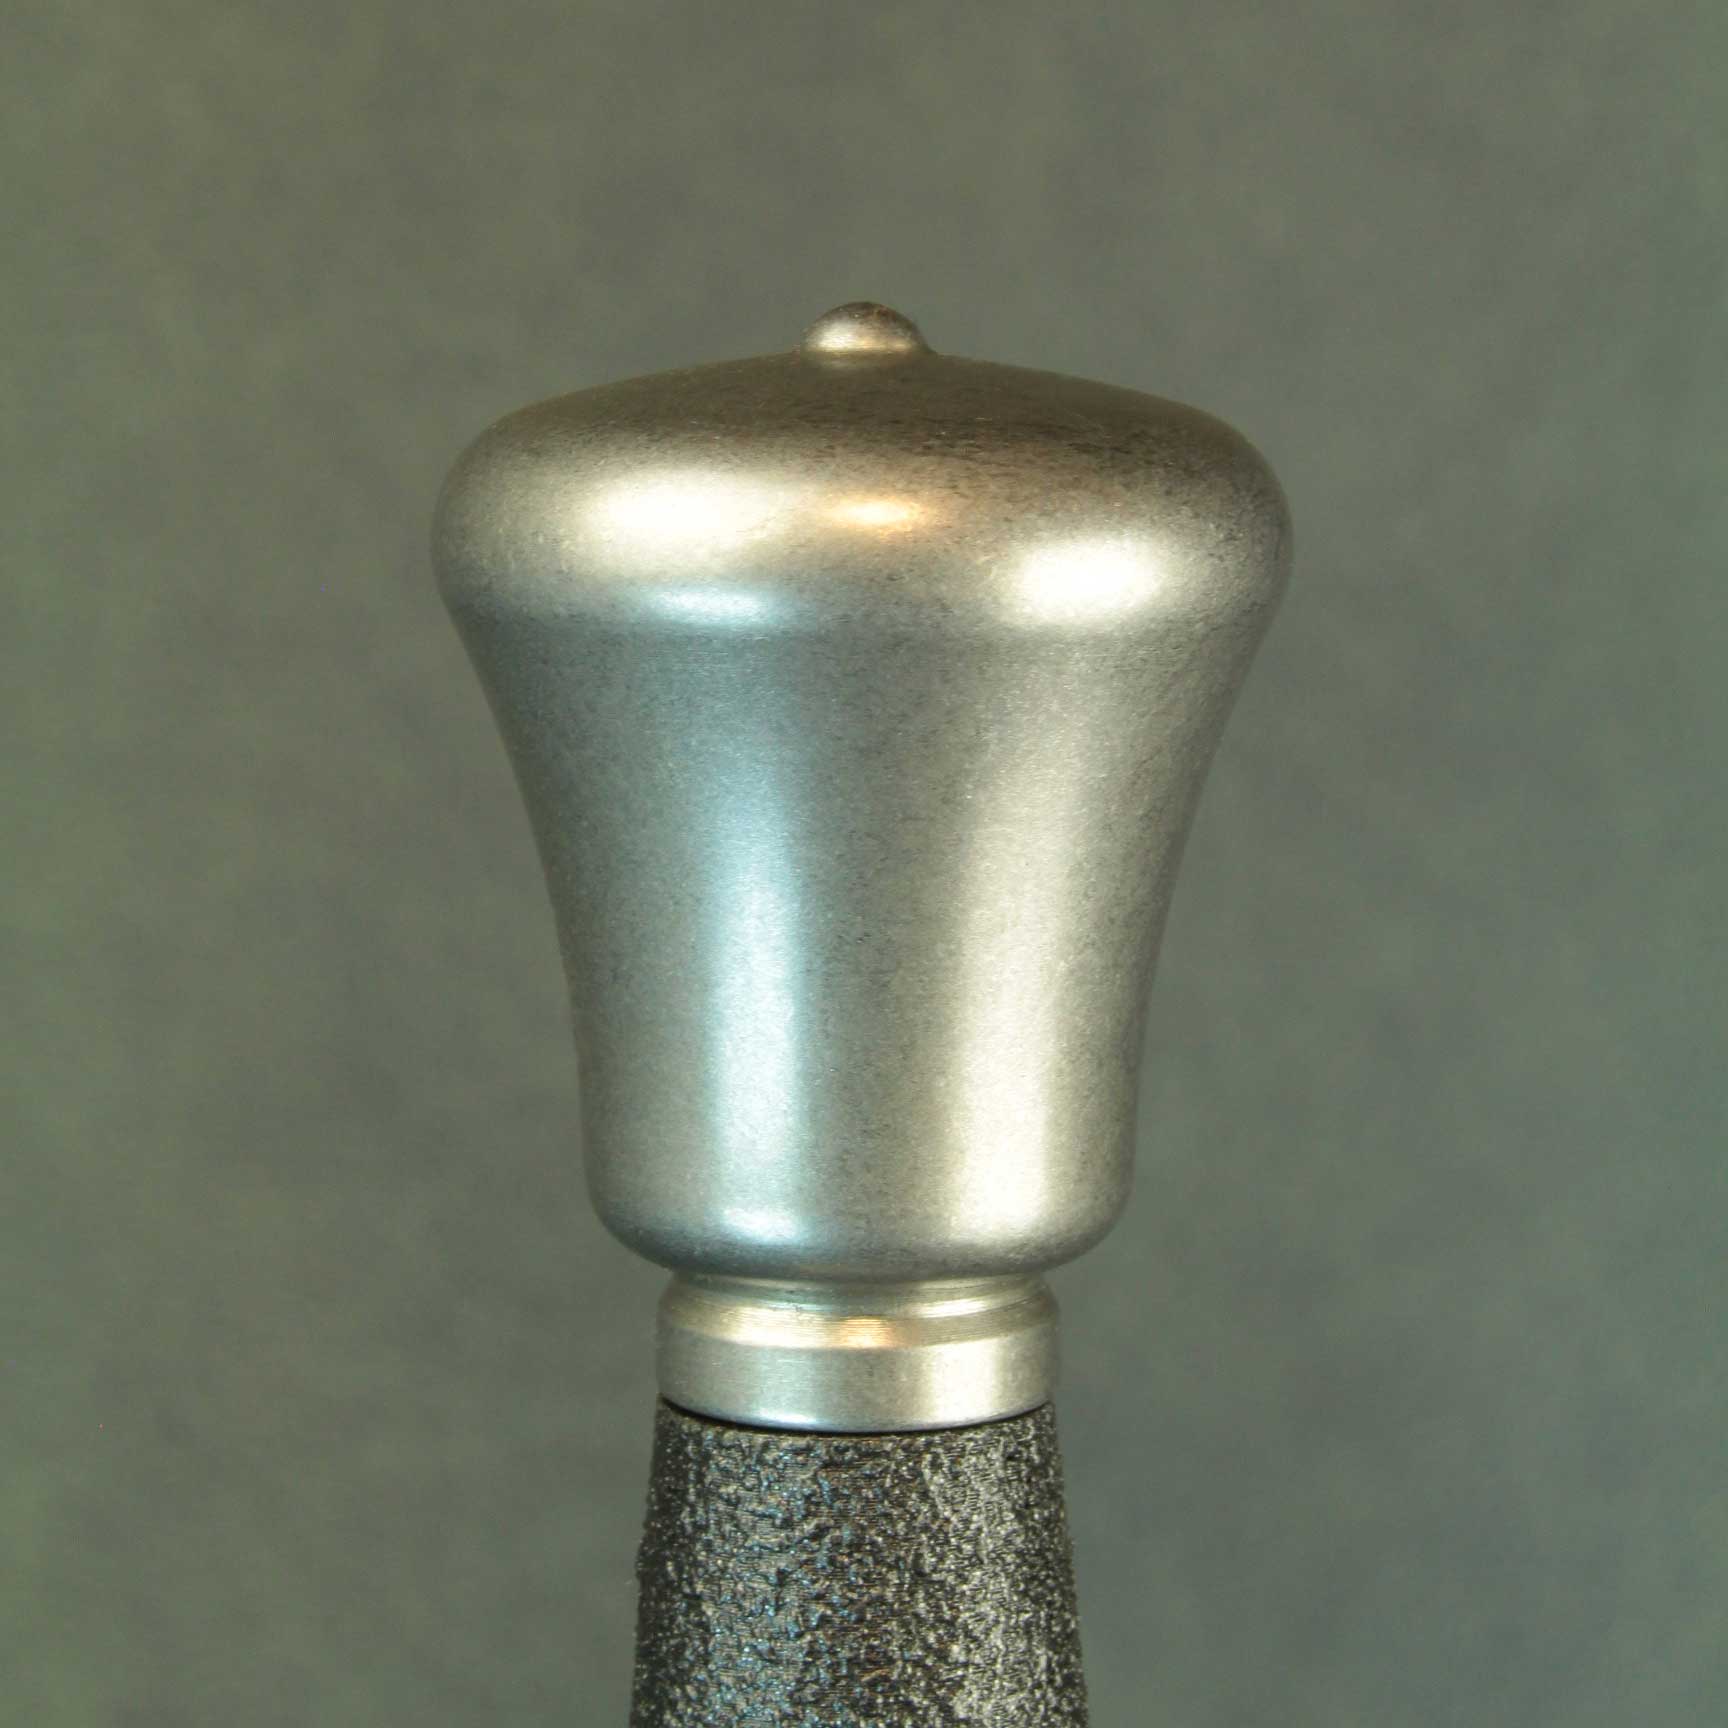 Medium Scent Stopper Profile Pommel